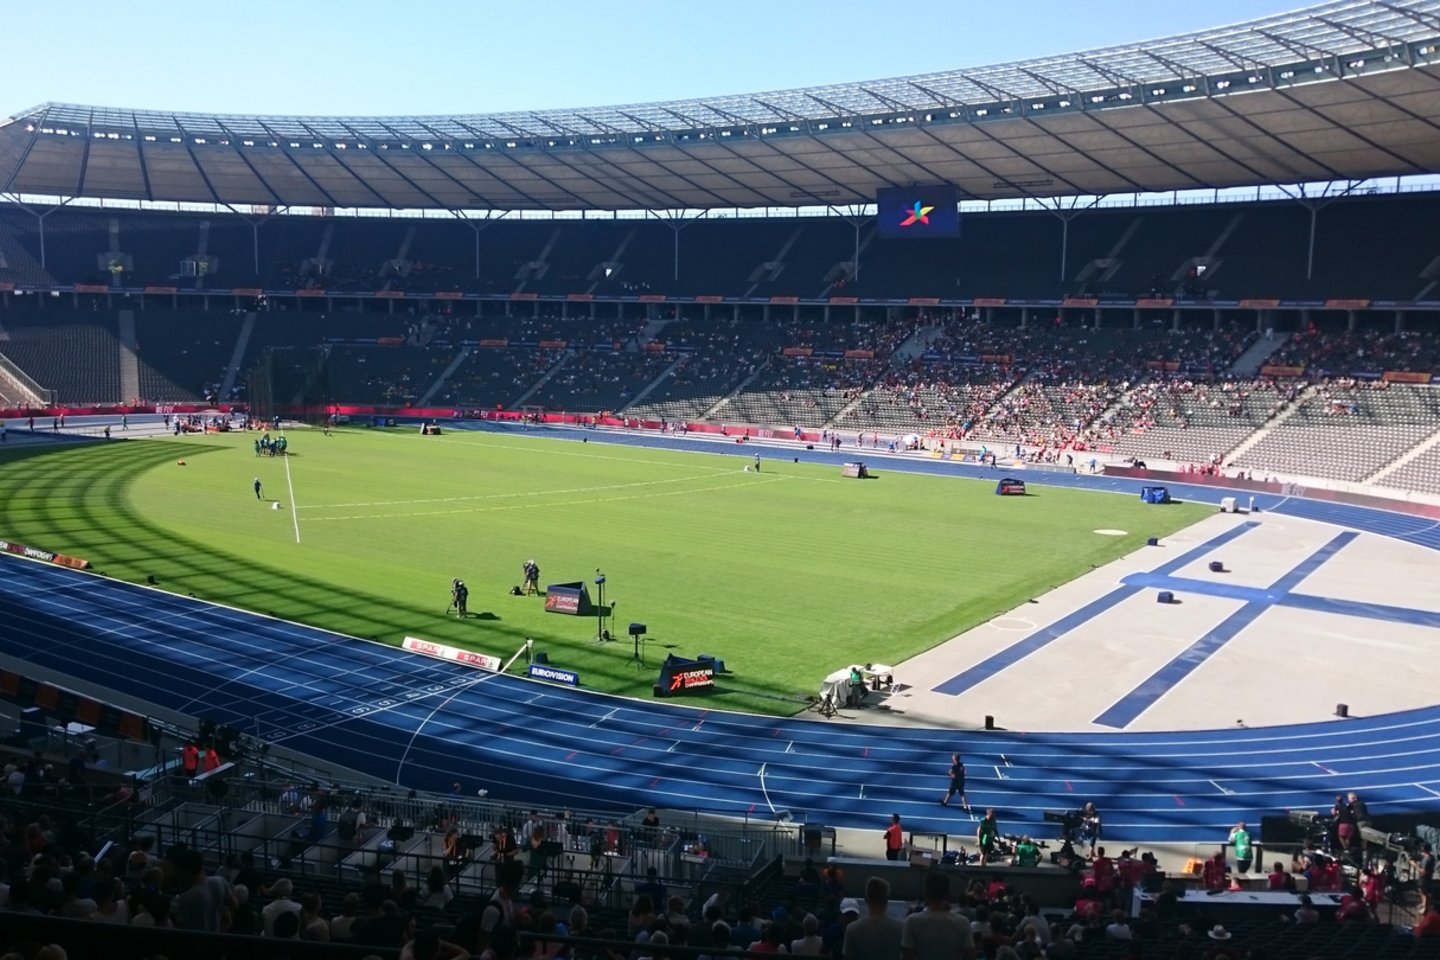  Europos čempionatas vyksta Berlyno olimpiniame stadione.<br> lrytas.lt nuotr.